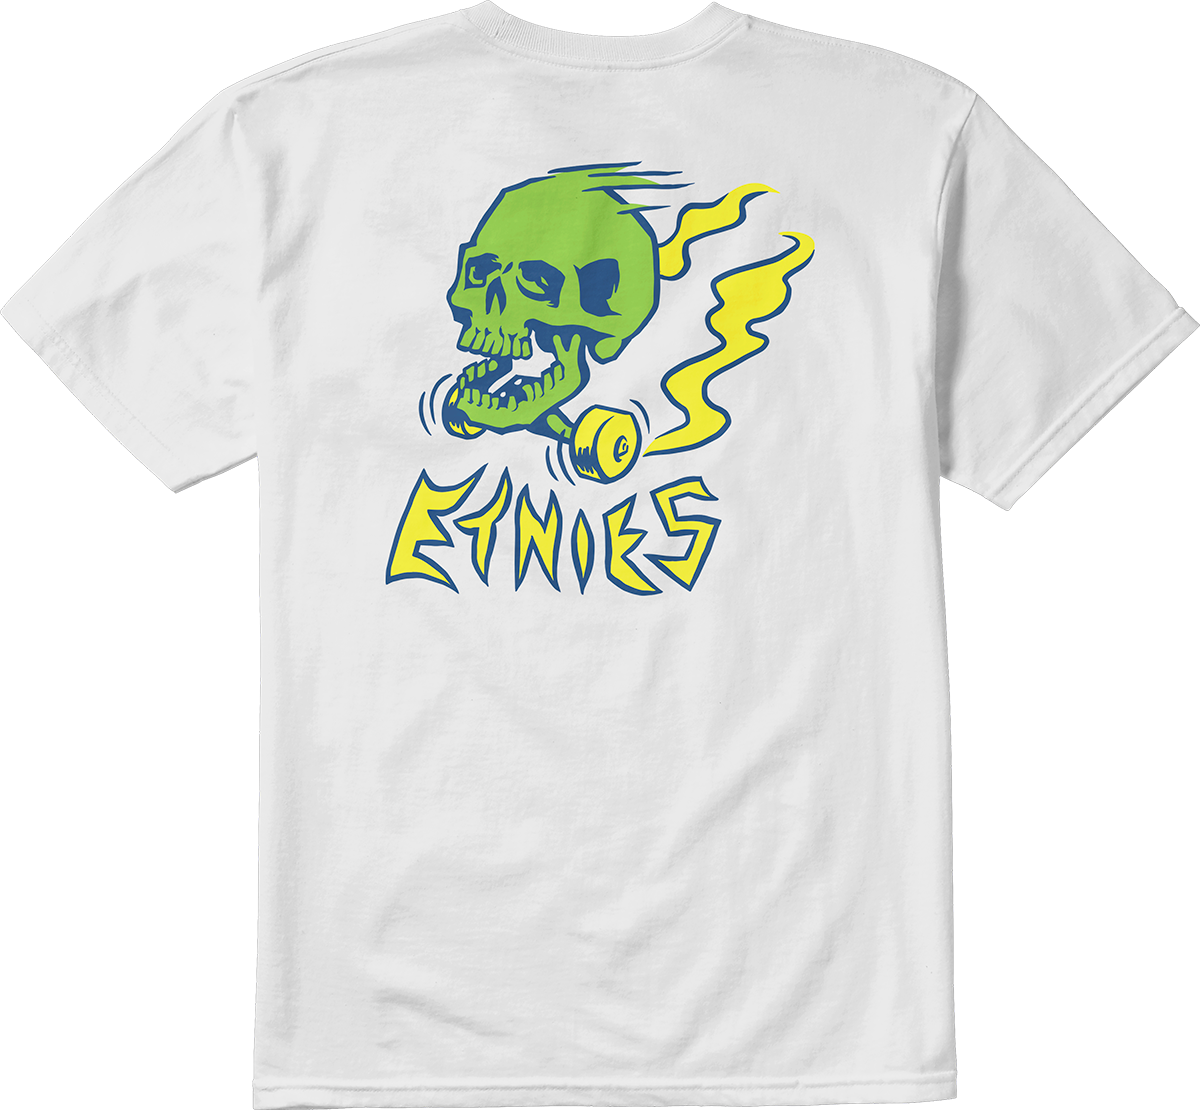 Etnies Mens Skate Skull Tee White T-Shirt